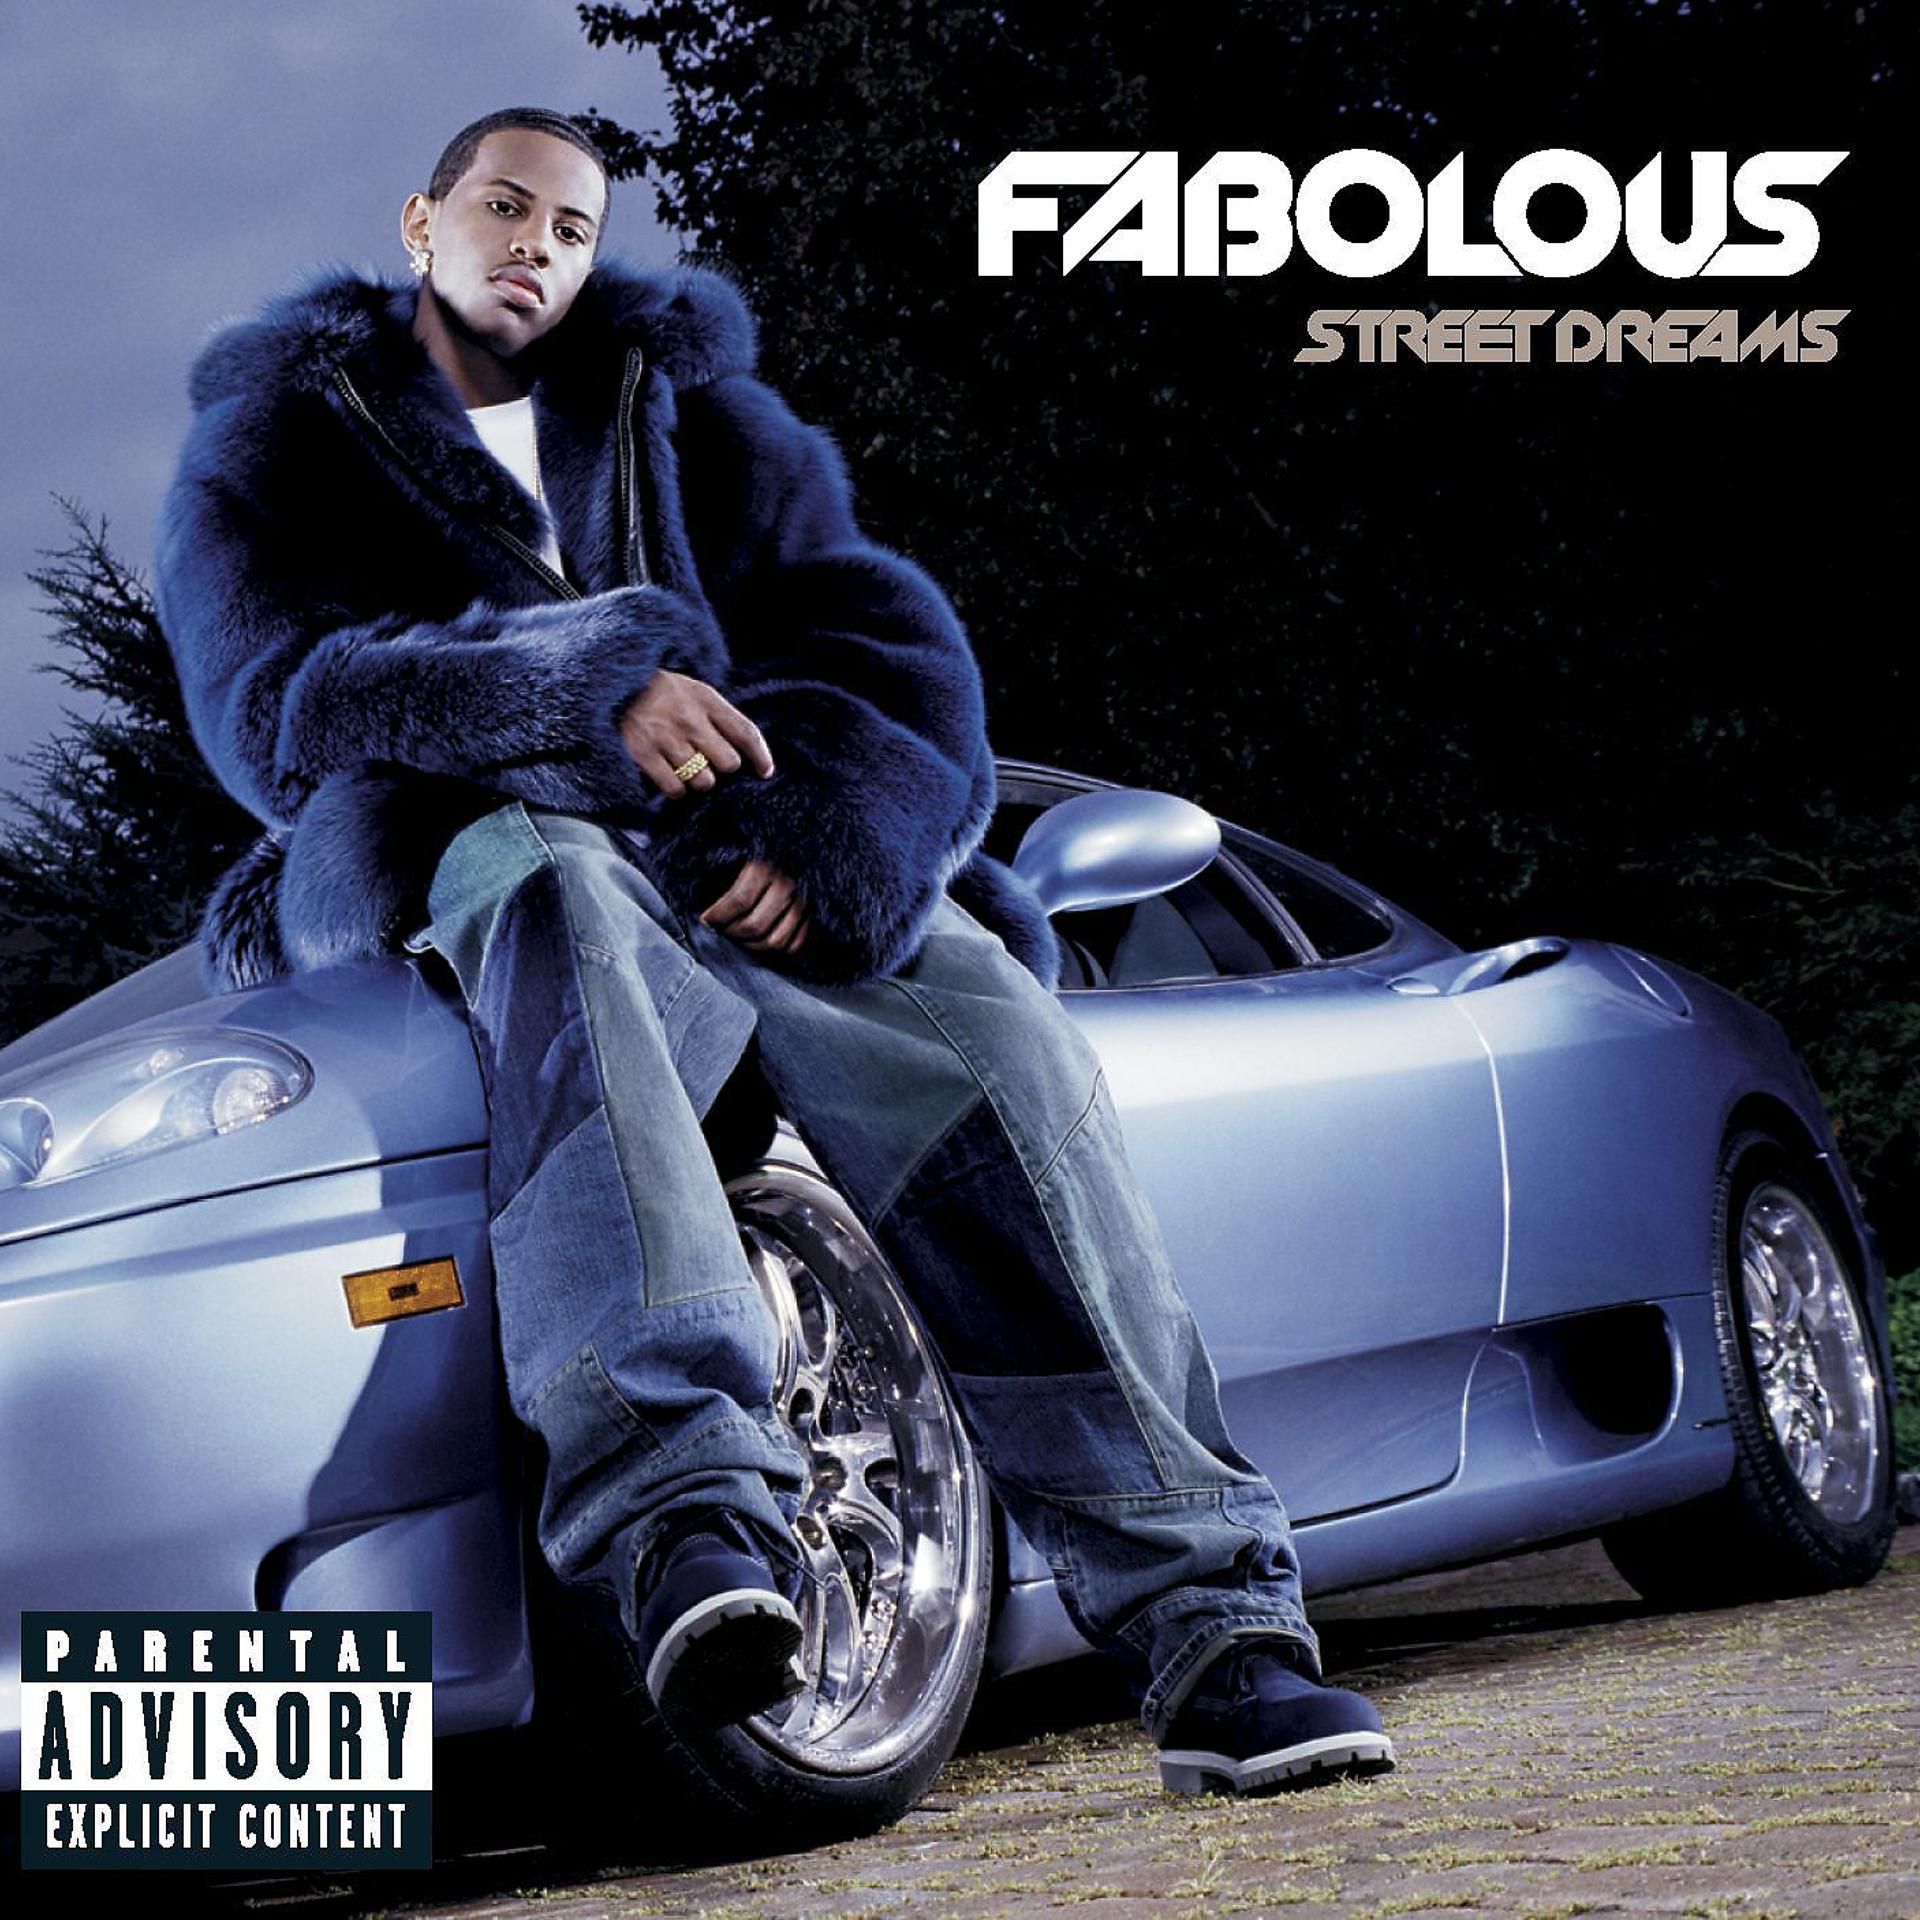 Street dreams на русском. Fabolous 2007. Fabolous альбомы. Street Dreams. Fabolous - more Street Dreams pt. 2 The Mixtape (2003) обложка.